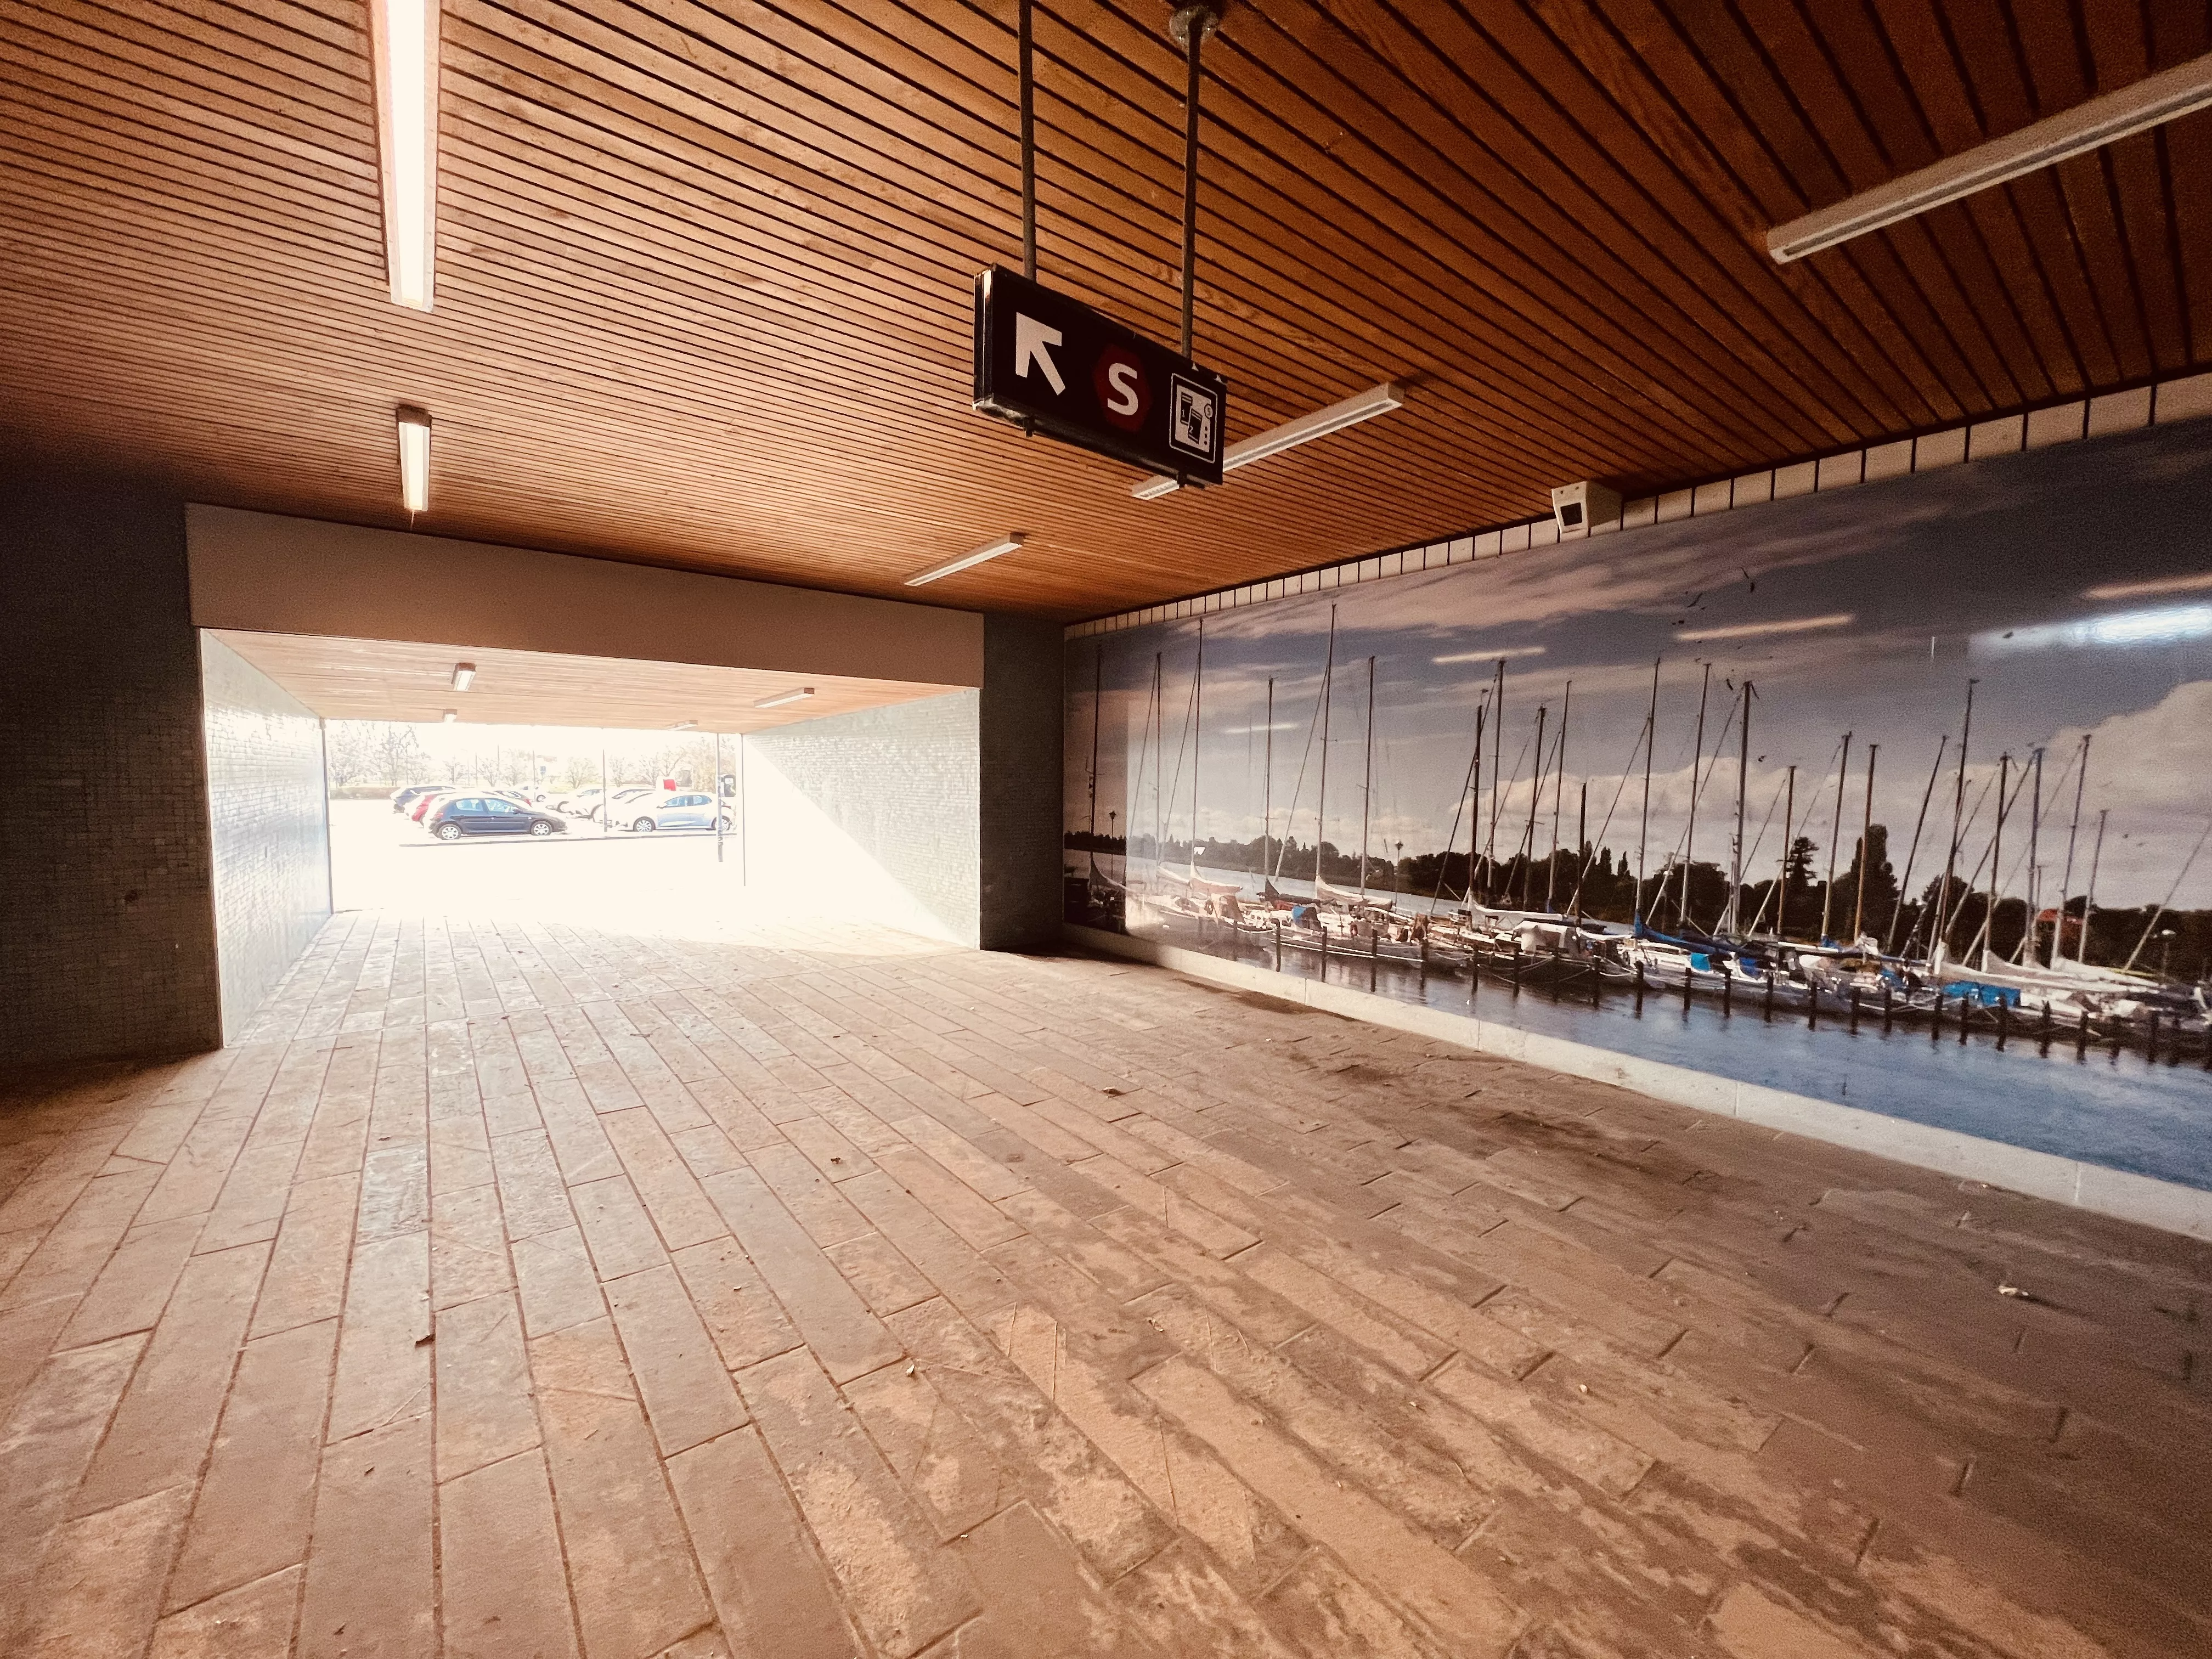 Billede af Åmarken Station.